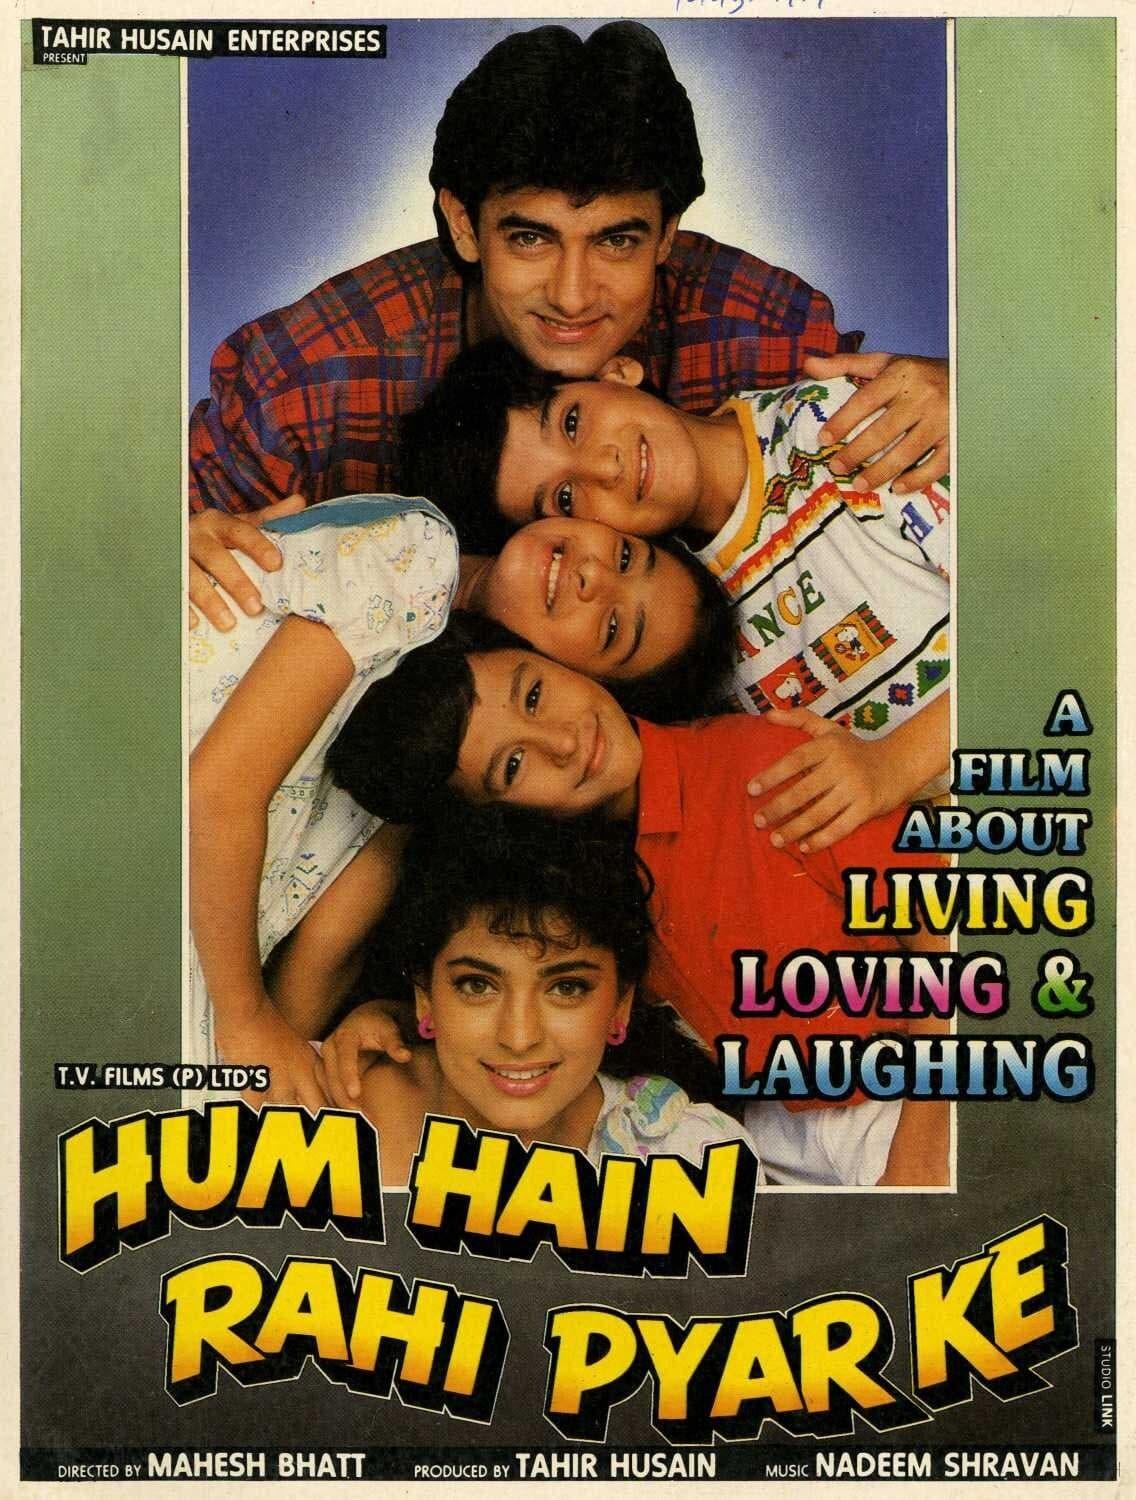 Hum Hain Rahi Pyar Ke poster